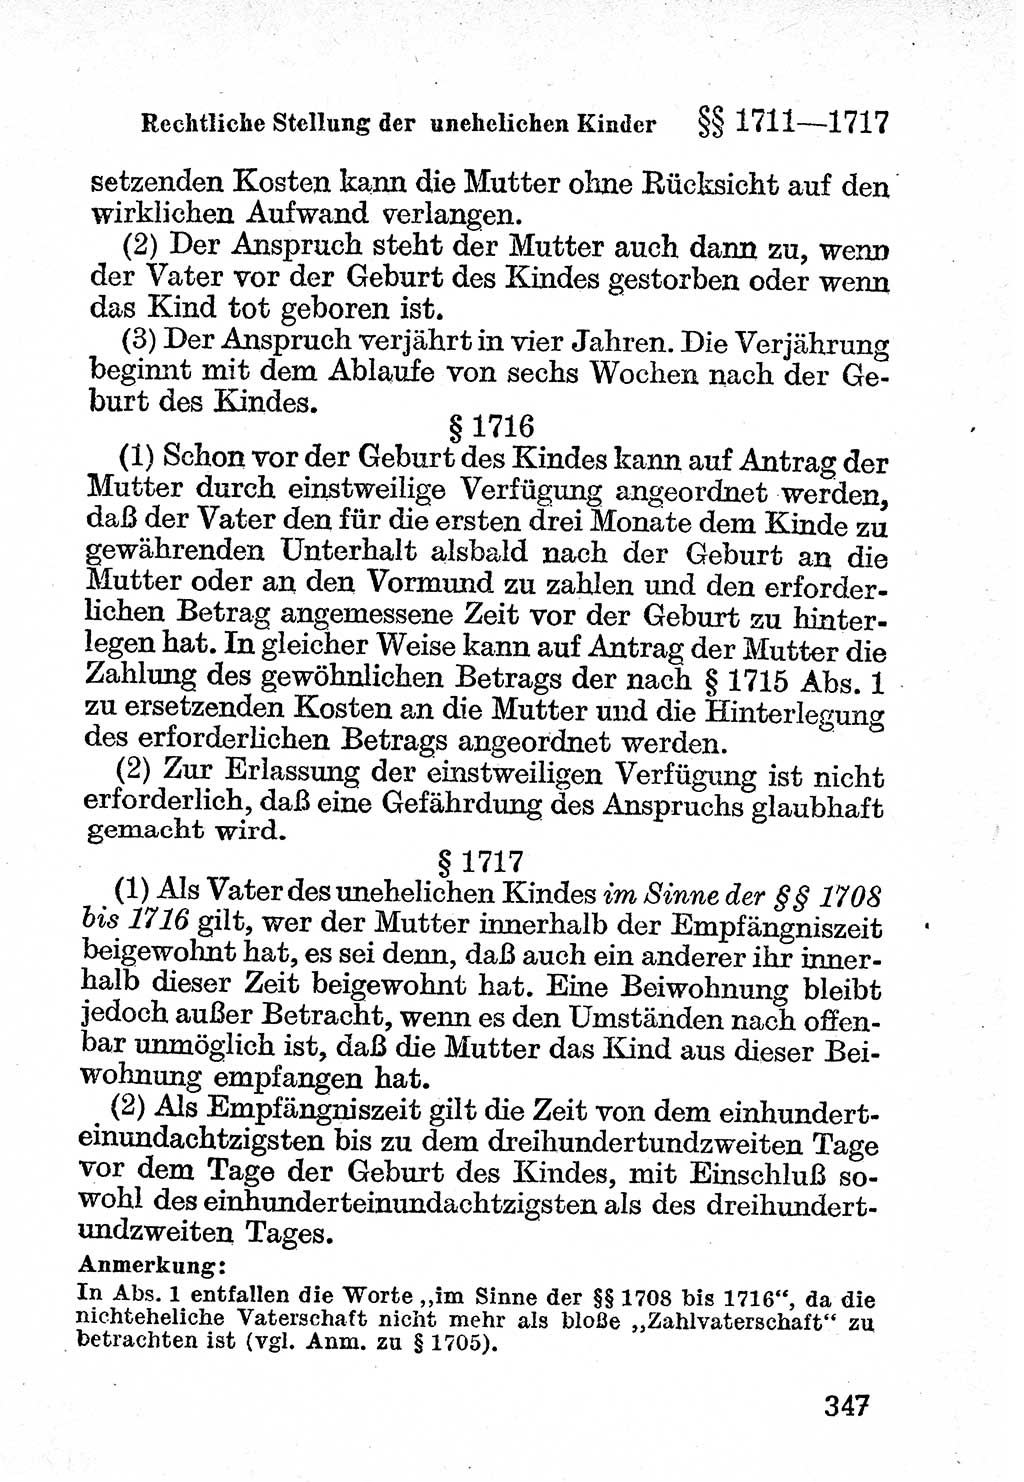 Bürgerliches Gesetzbuch (BGB) nebst wichtigen Nebengesetzen [Deutsche Demokratische Republik (DDR)] 1956, Seite 347 (BGB Nebenges. DDR 1956, S. 347)